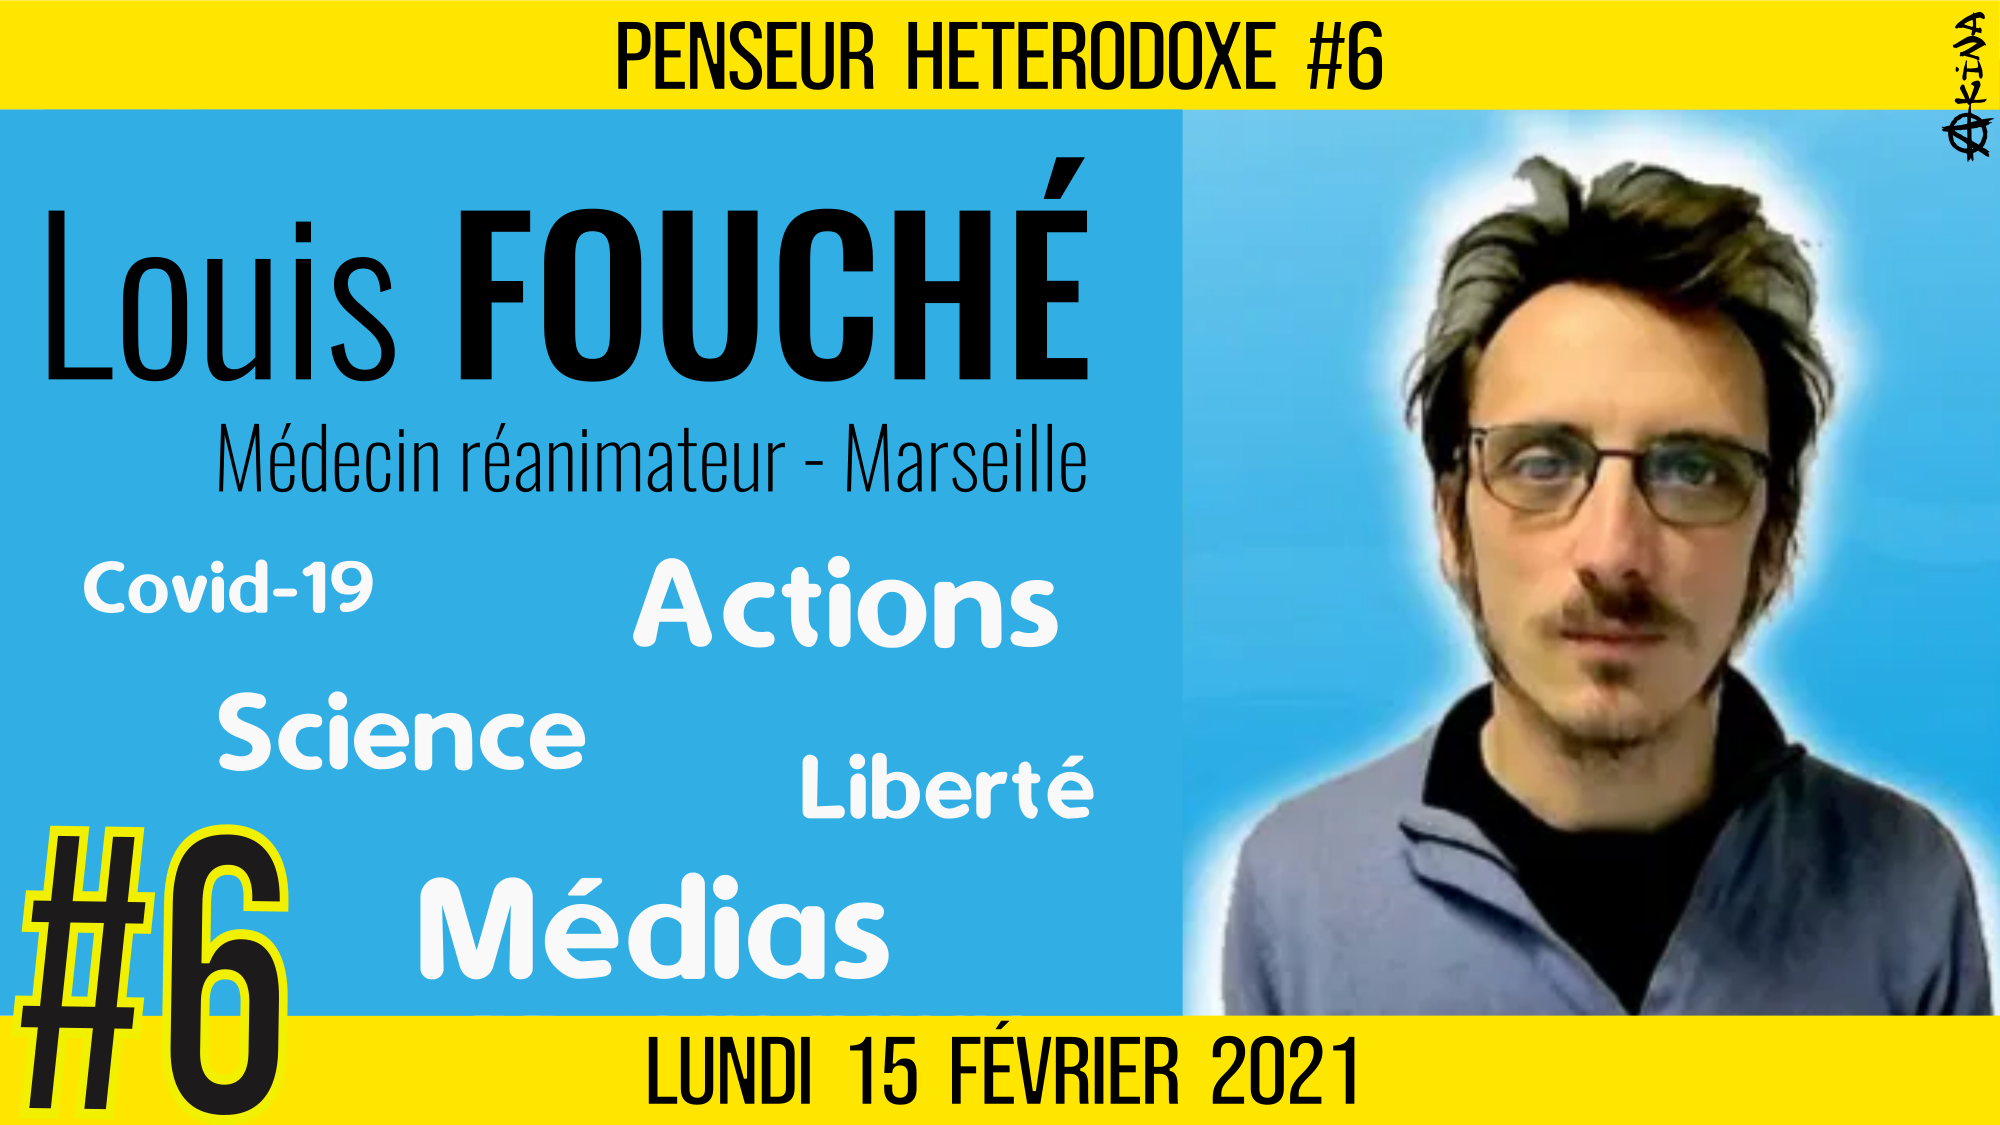 💡PENSEUR HÉTÉRODOXE #6 🗣 Louis FOUCHÉ 🎯 Covid-19, Science, Médias, Liberté, Actions… 📆 15-02-2021